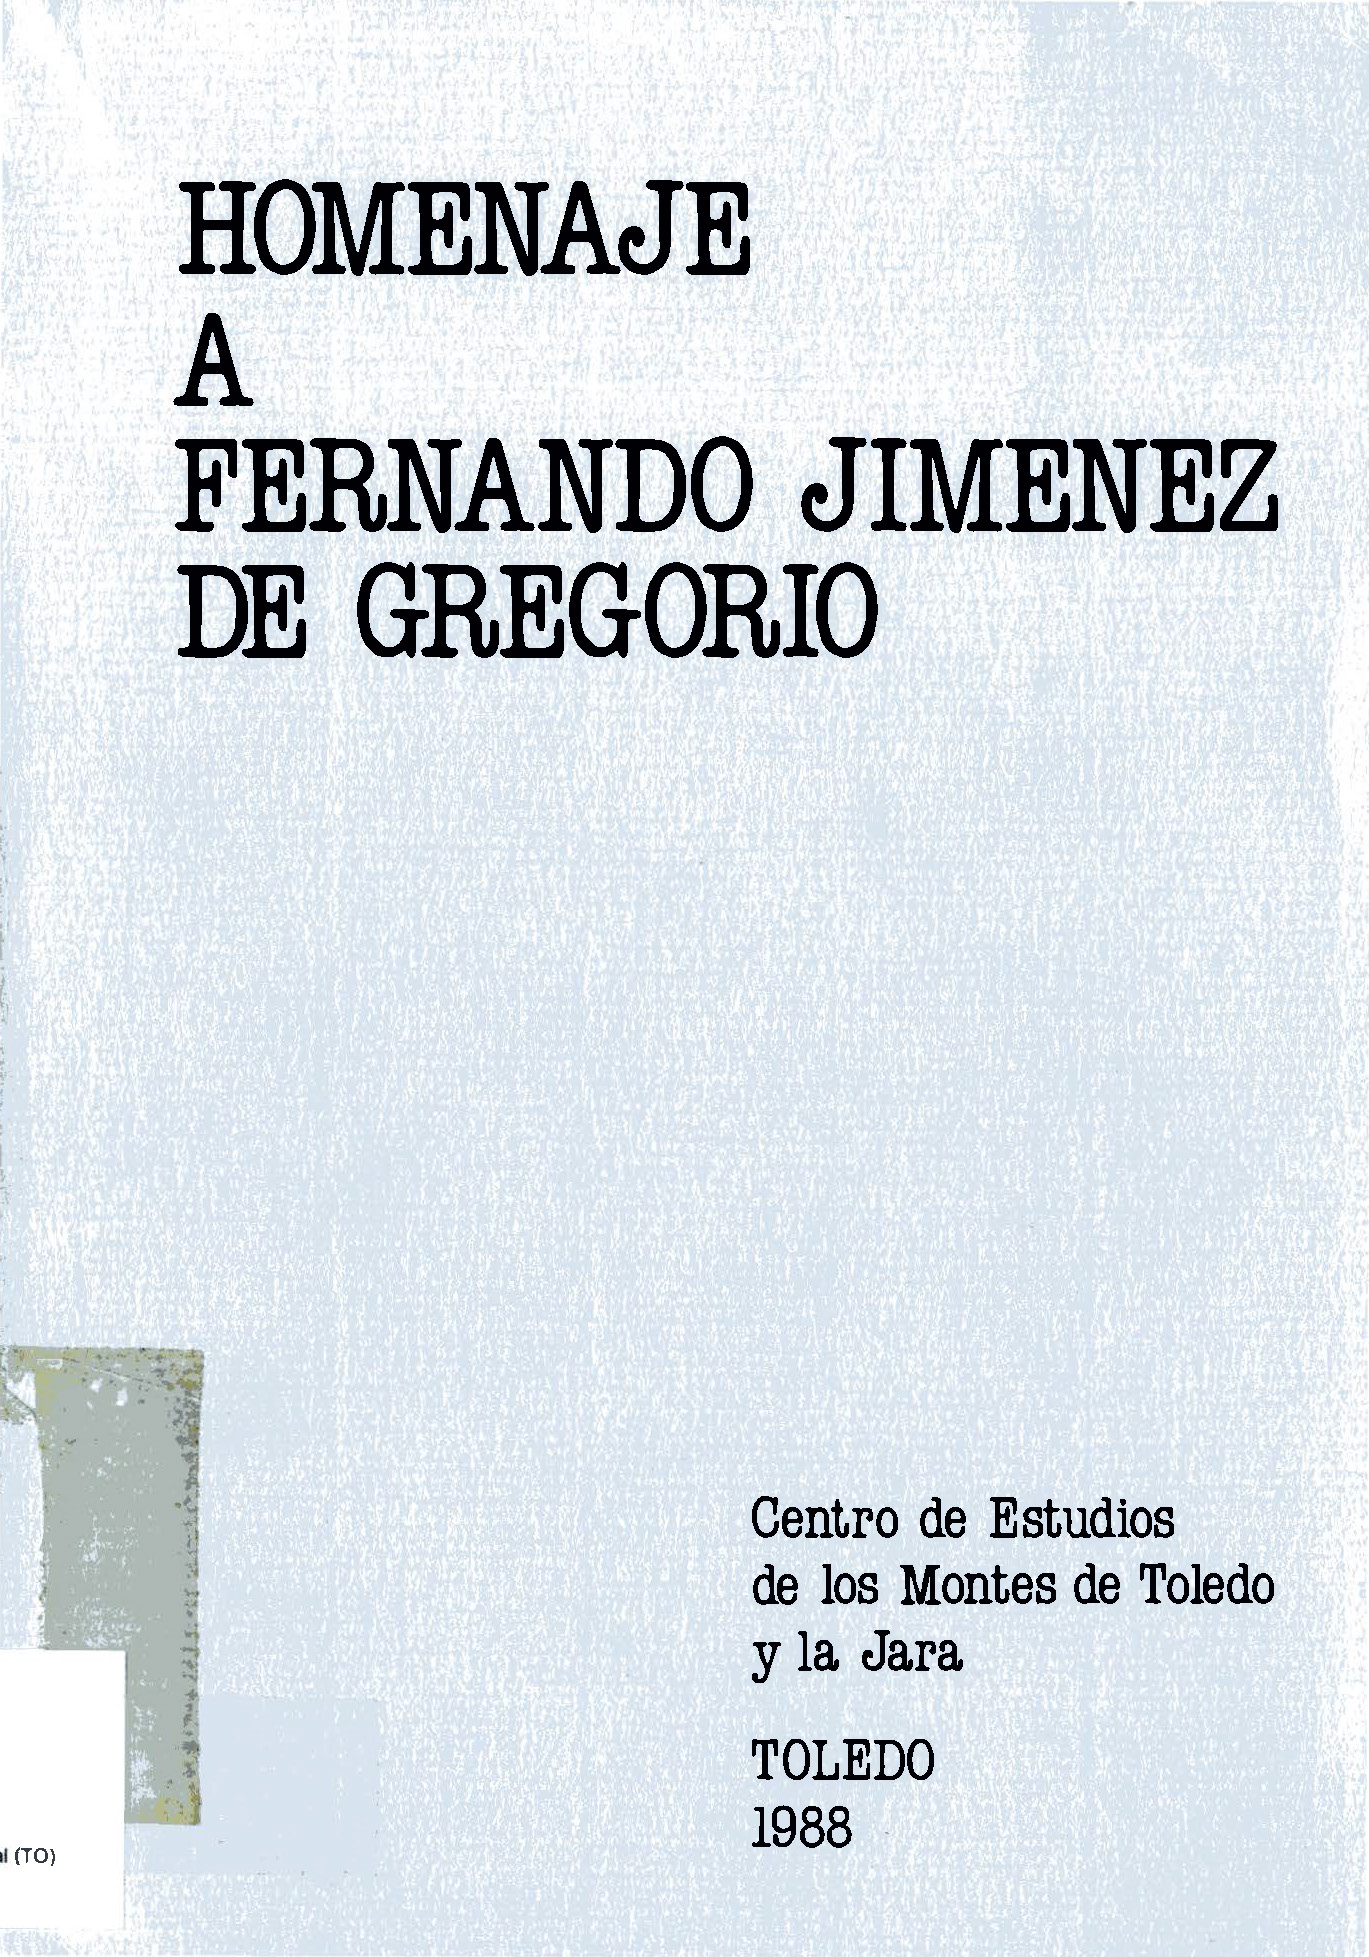 Imagen de portada del libro Homenaje a D. Fernando Jiménez de Gregorio